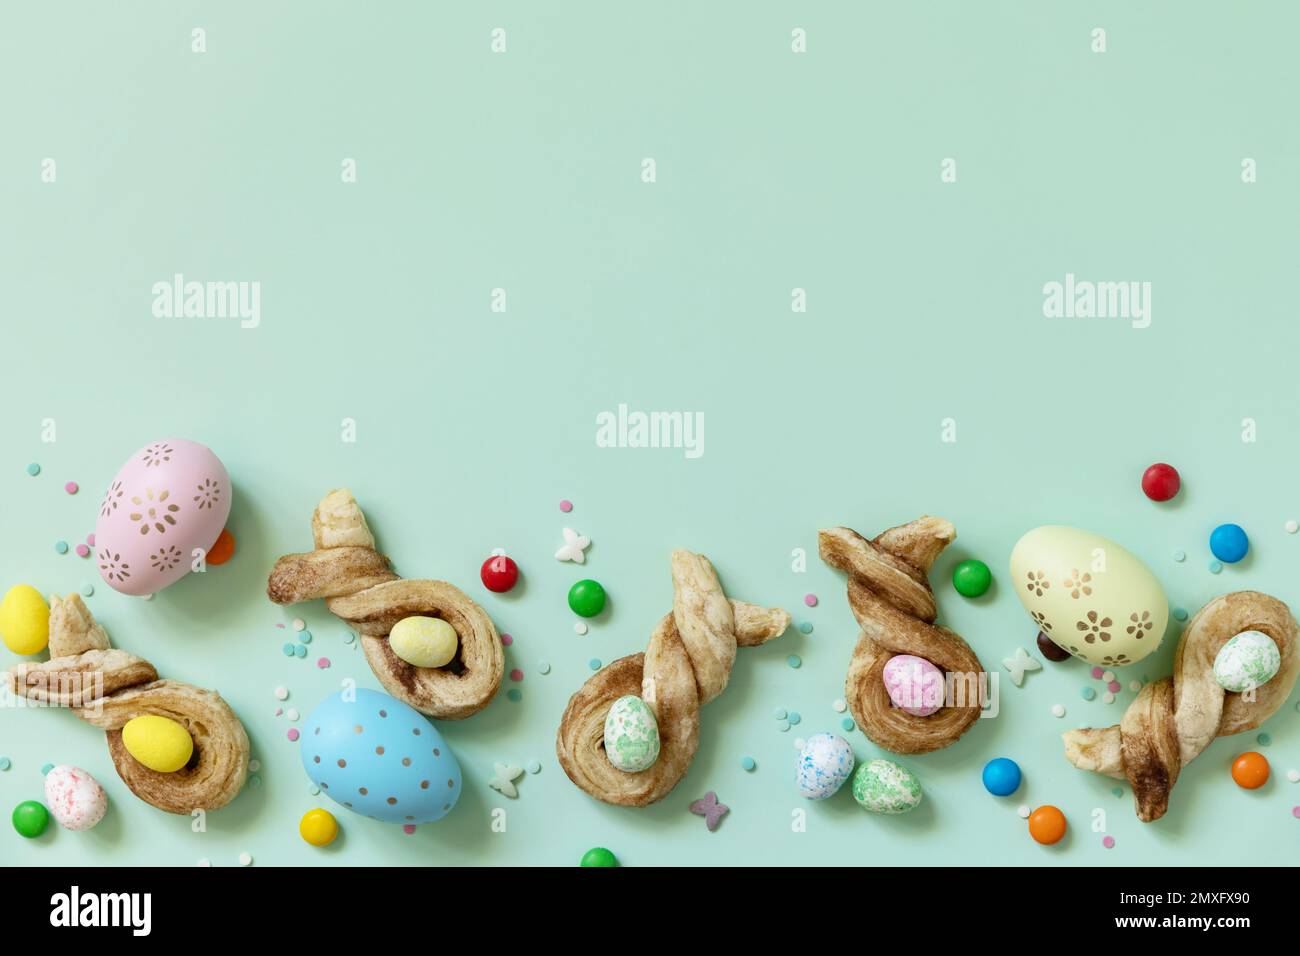 Colore les œufs de Pâques avec des petits pains en forme de lapin de Pâques, pâte feuilletée à la cannelle sur fond vert pastel. Joyeuses Pâques. Vue de dessus. Copie s Banque D'Images